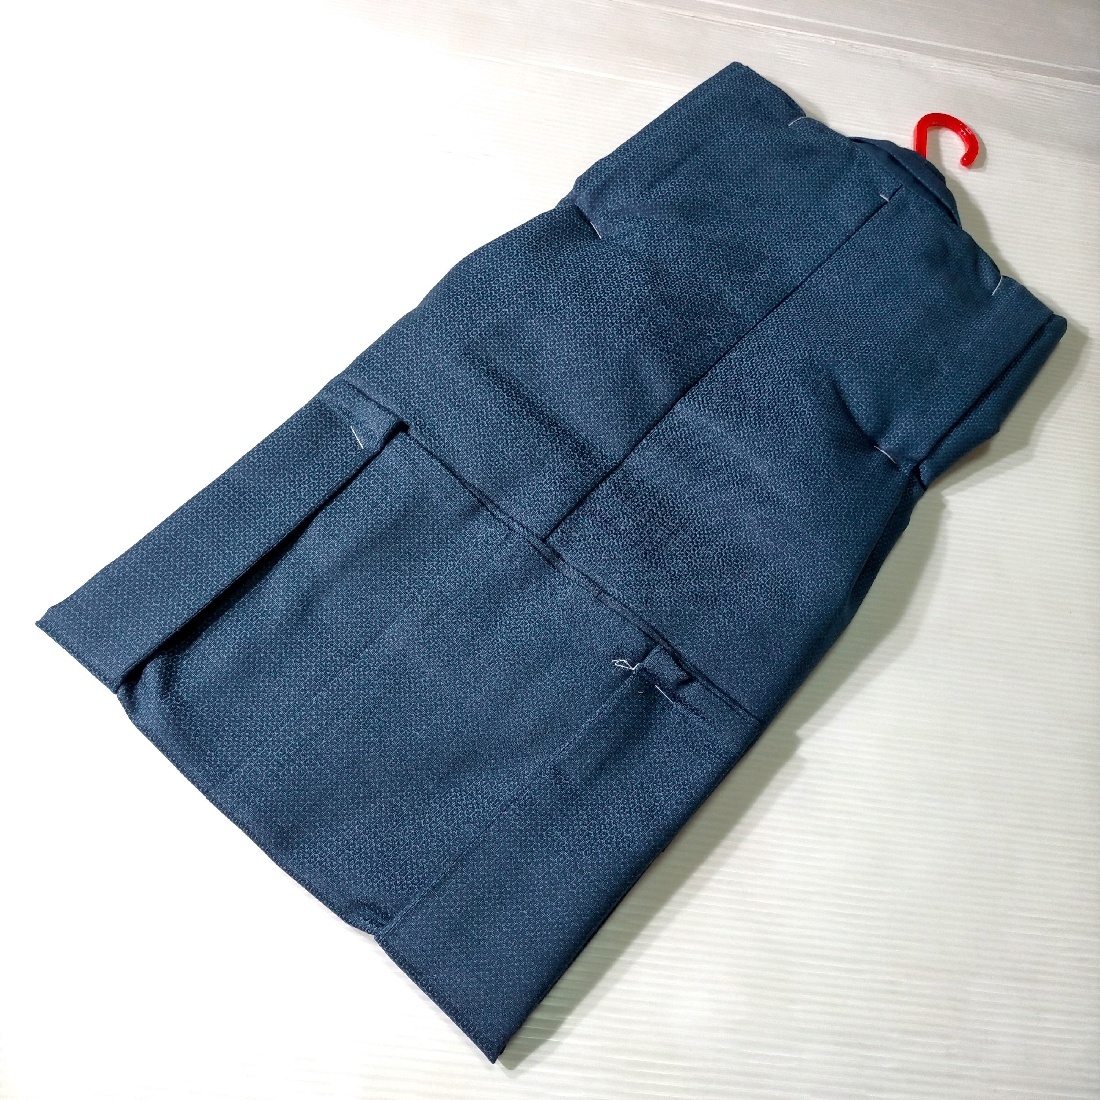  шерсть. кимоно * перо тканый ансамбль kk428 темно-синий земля 110 размер 5-6 лет новый товар включая доставку 